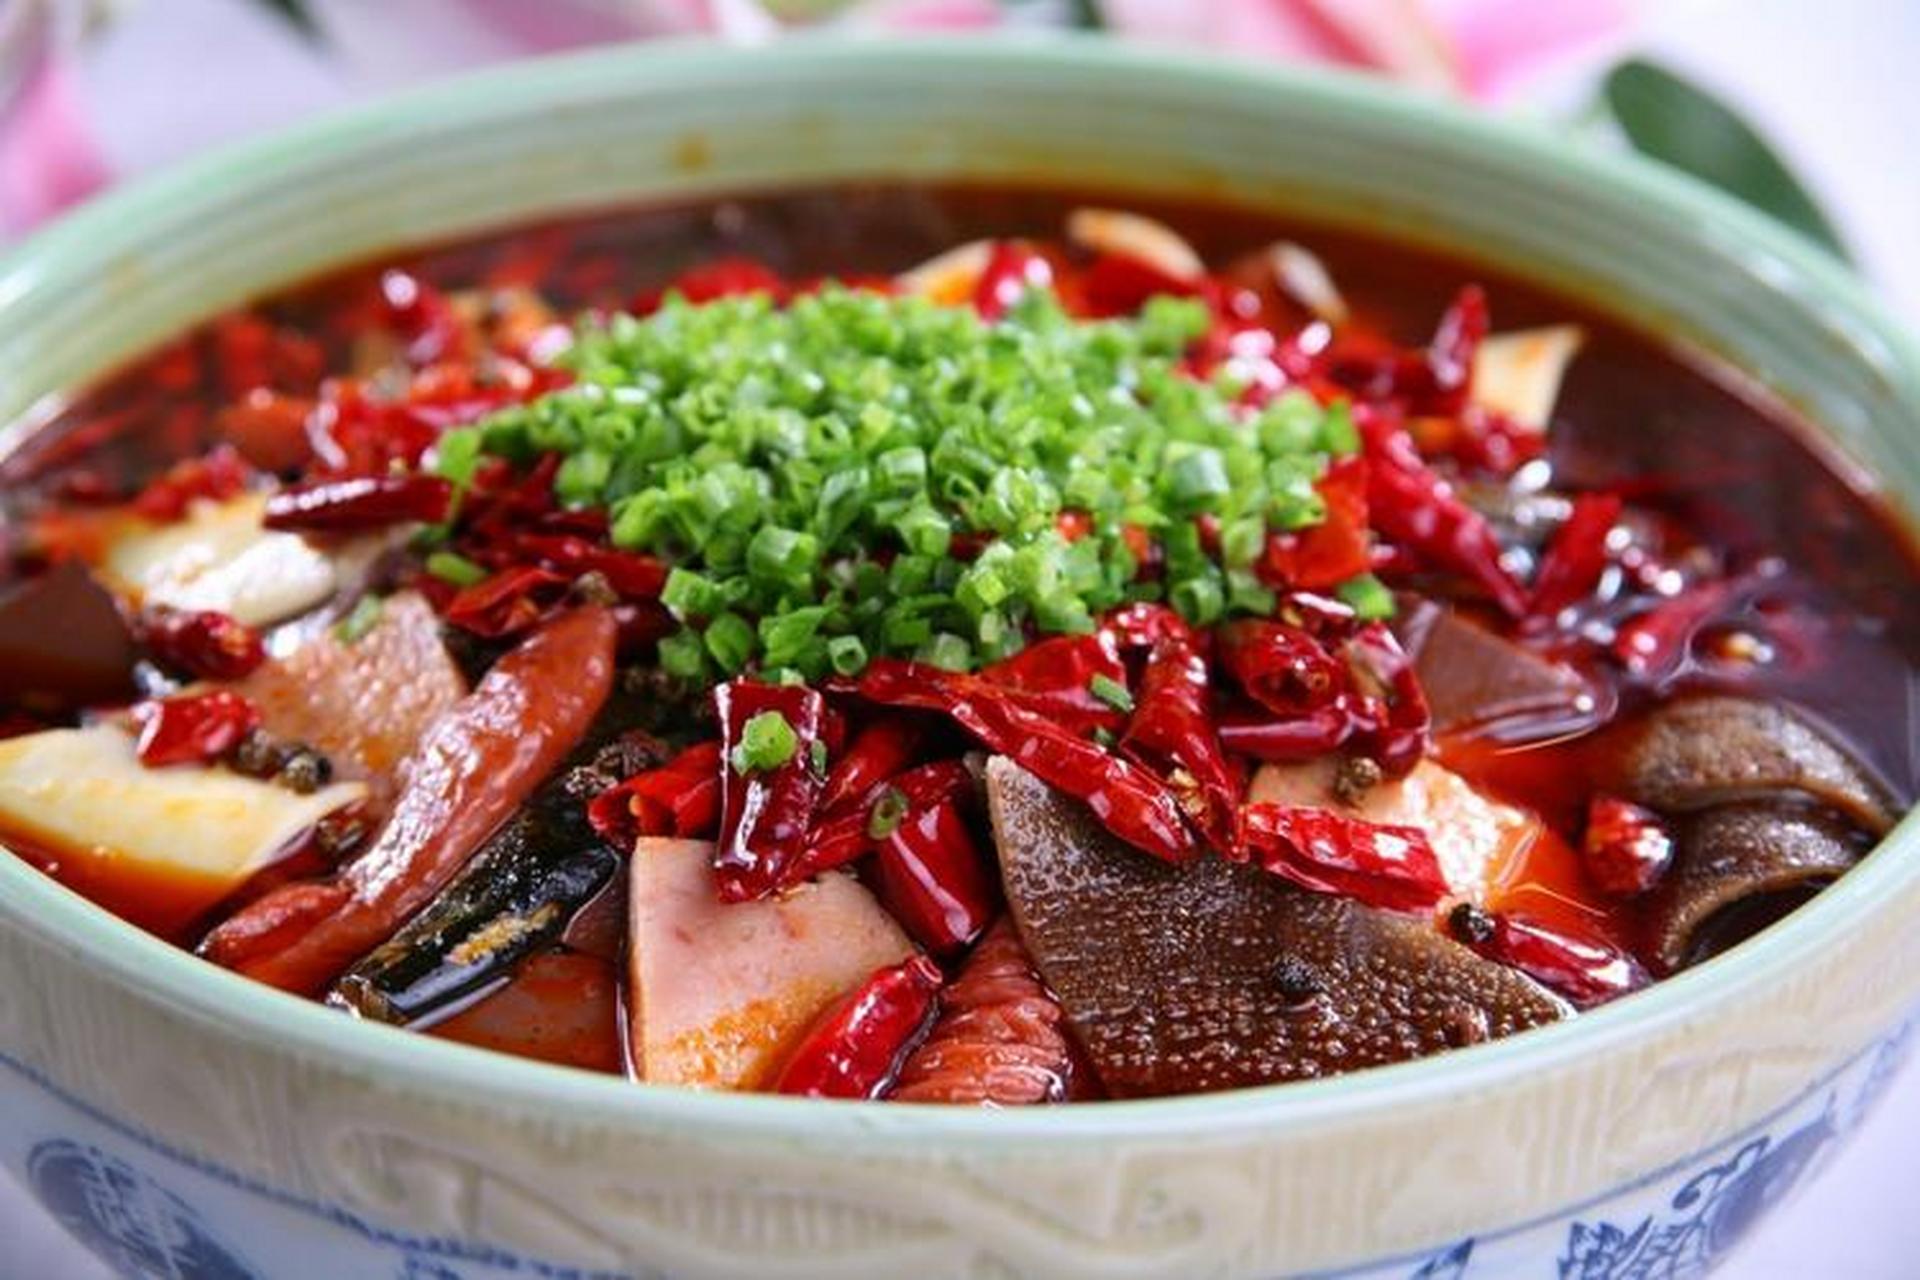 99毛血旺的做法99 95毛血旺是一道有名的四川火锅菜品,是火锅中